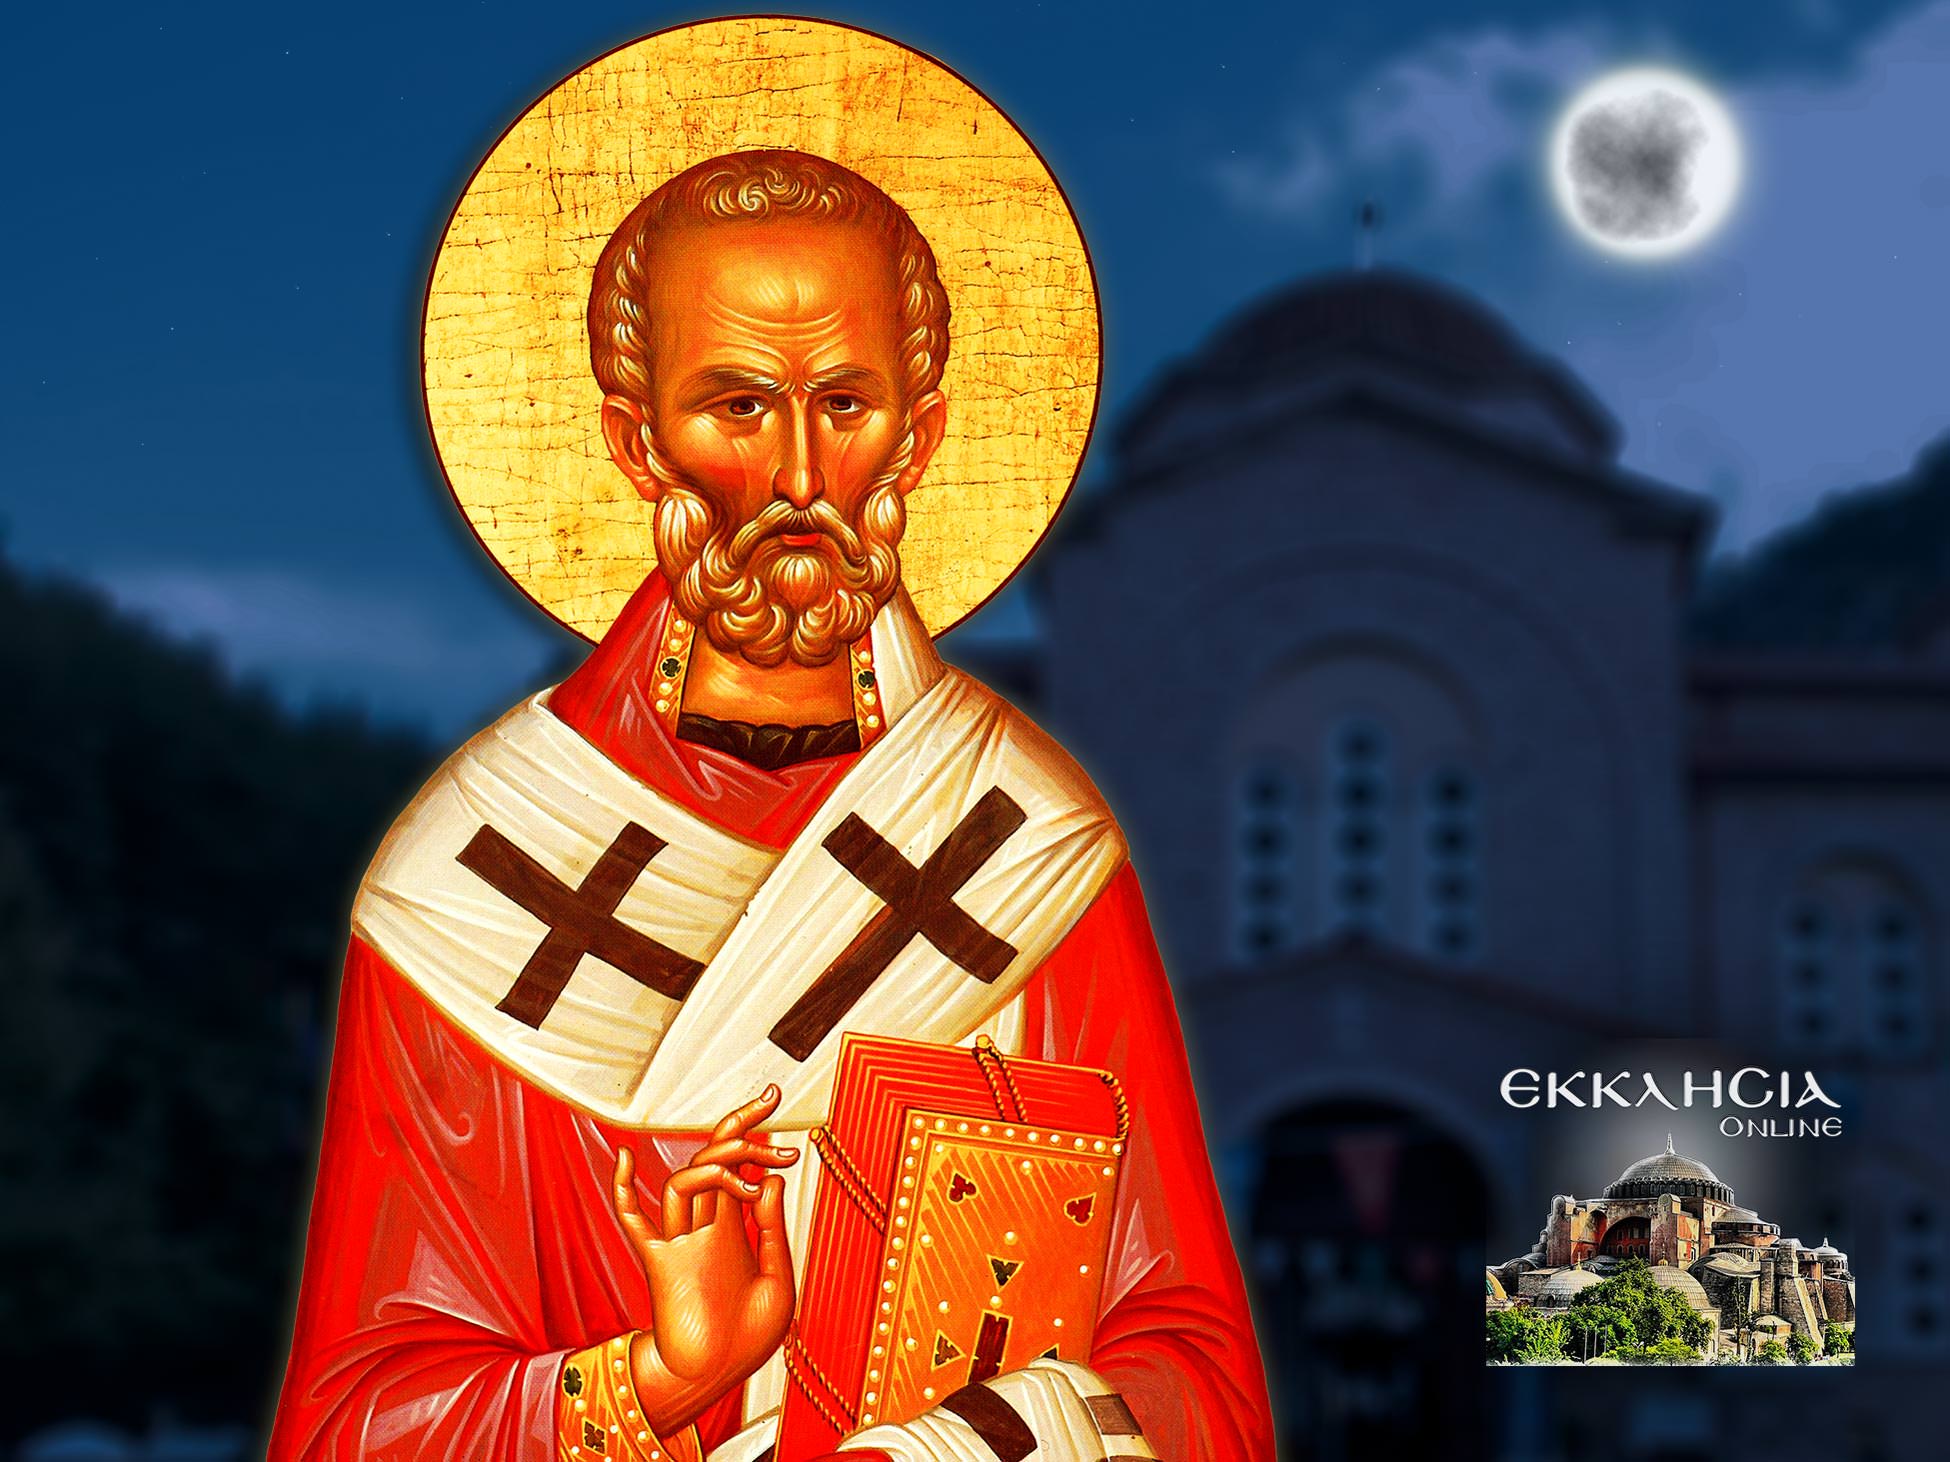 Άγιος Νικόλαος o Αρχιεπίσκοπος Μύρων της Λυκίας και Θαυματουργός 6 Δεκεμβρίου